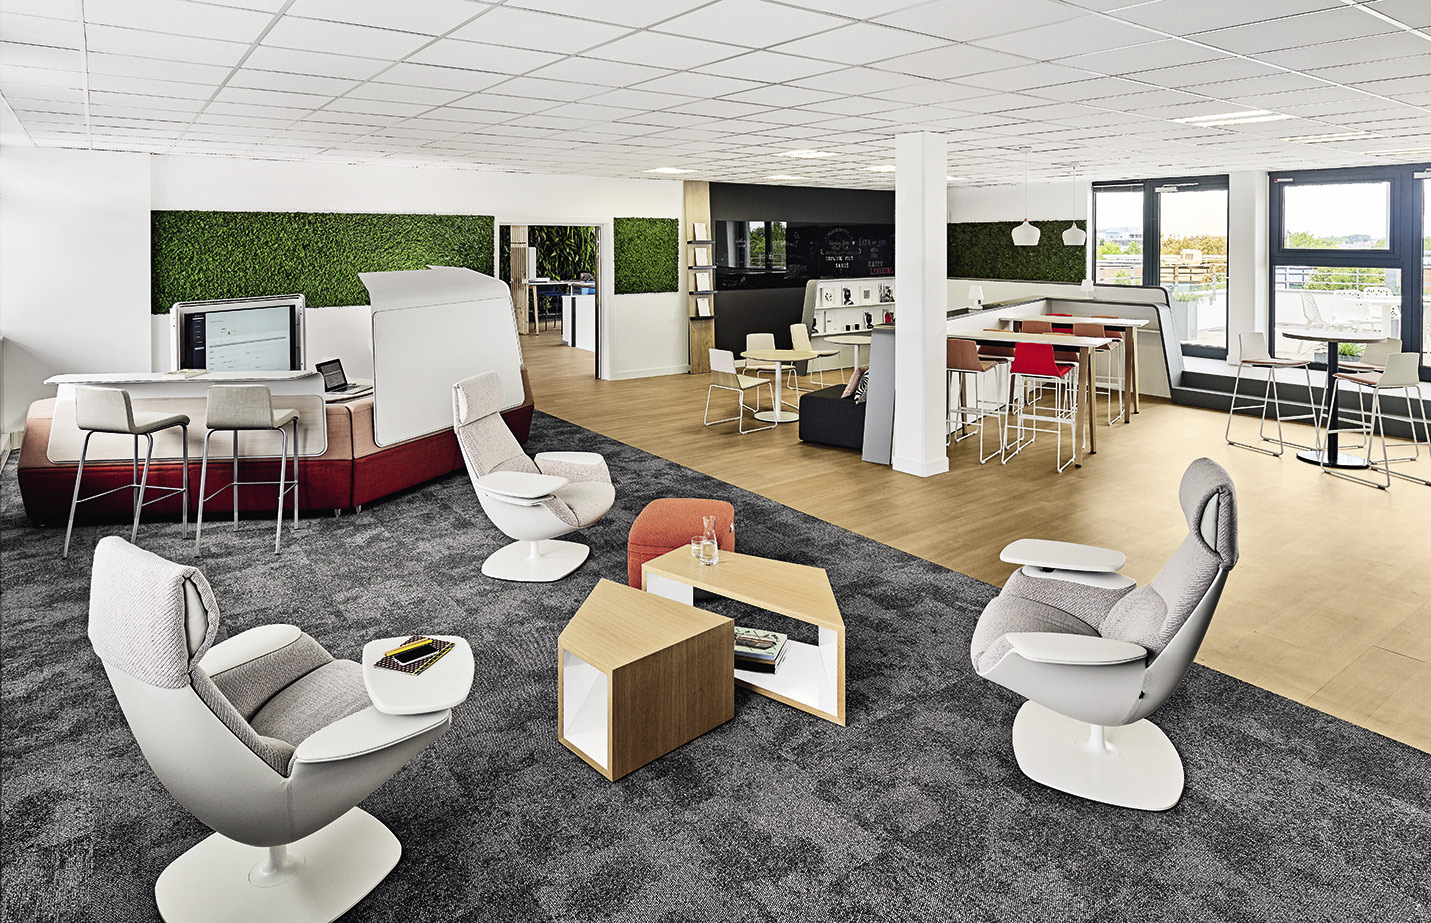 Ambiance startup pour le workcafé au siège Steelcase de Schiltigheim. Un espace innovant conçu       pour favoriser le travail collaboratif, la créativité et l’innovation. © DR